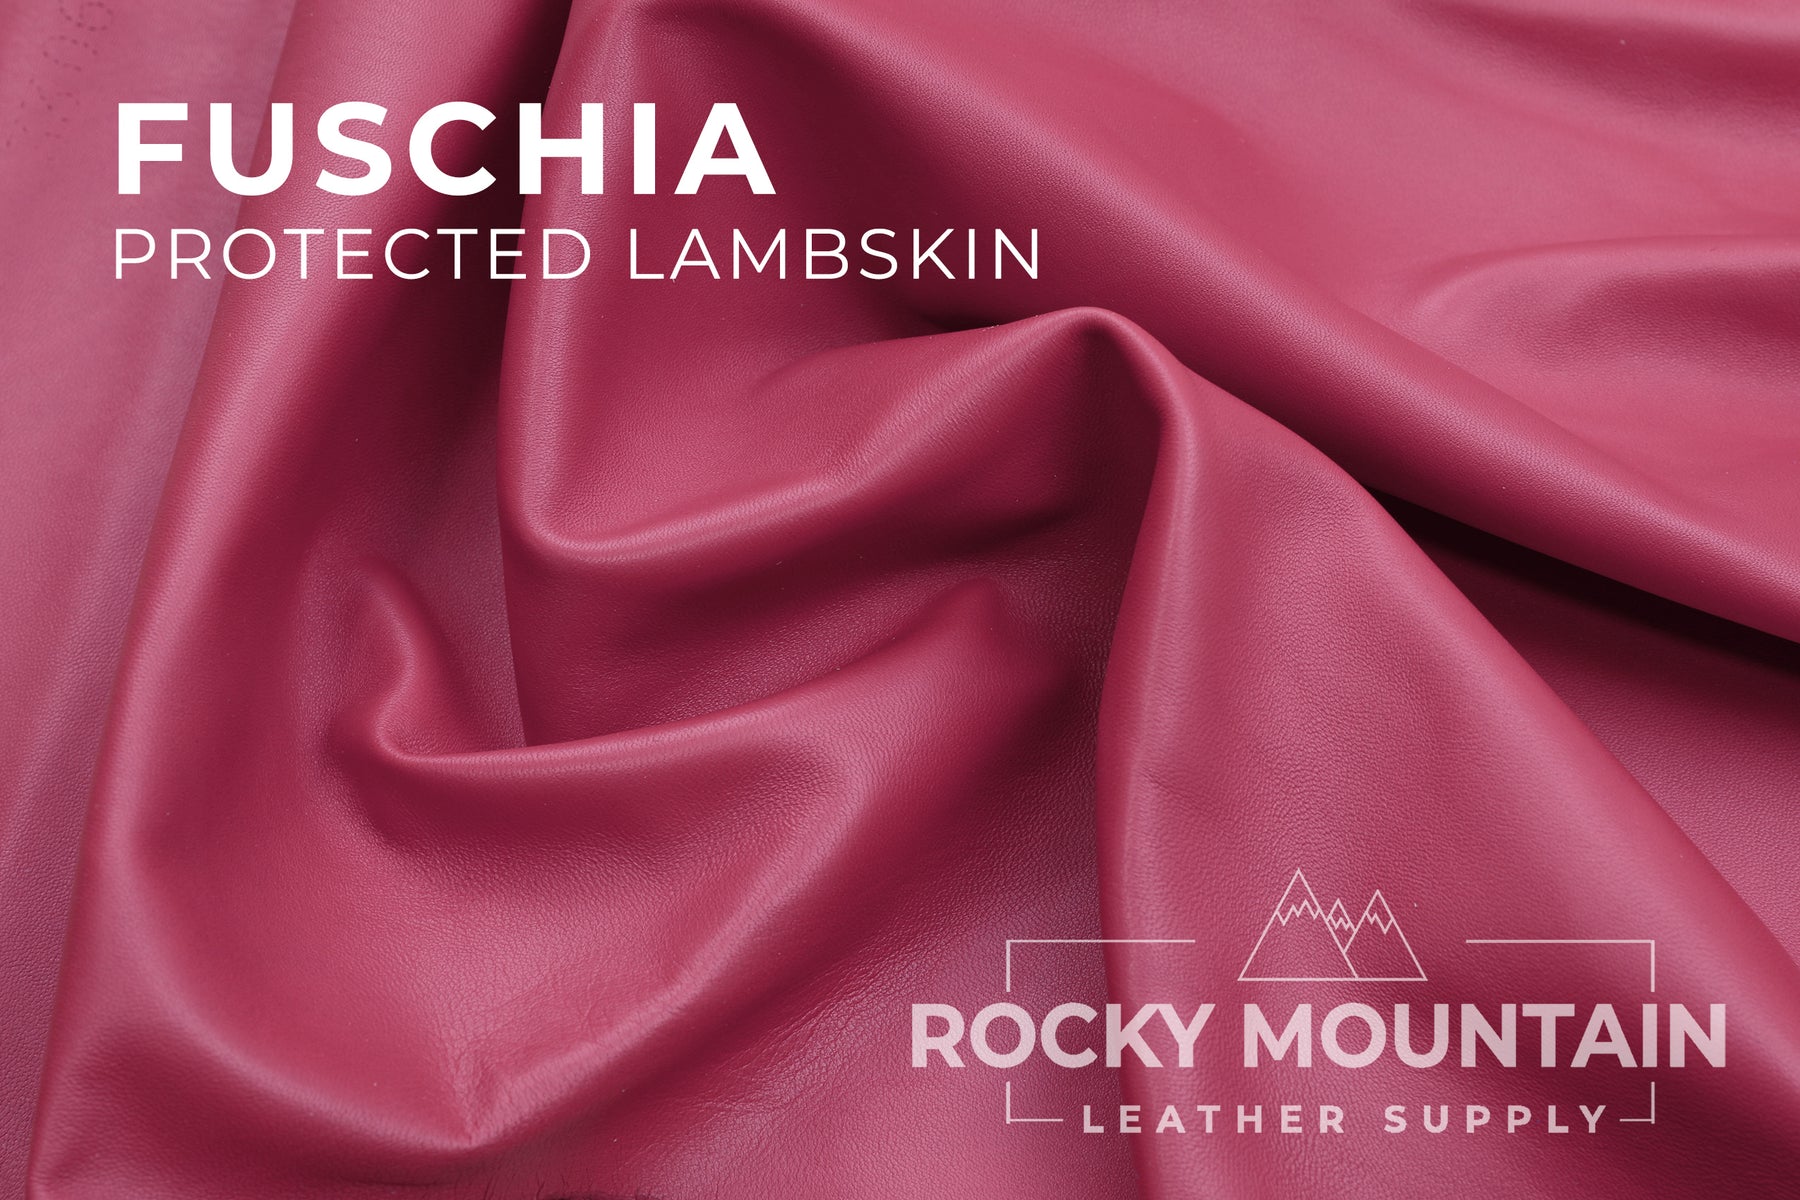 Bodin Joyeux 🇫🇷 - Protege "Protected" Lambskin - Luxury Leather (HIDES)